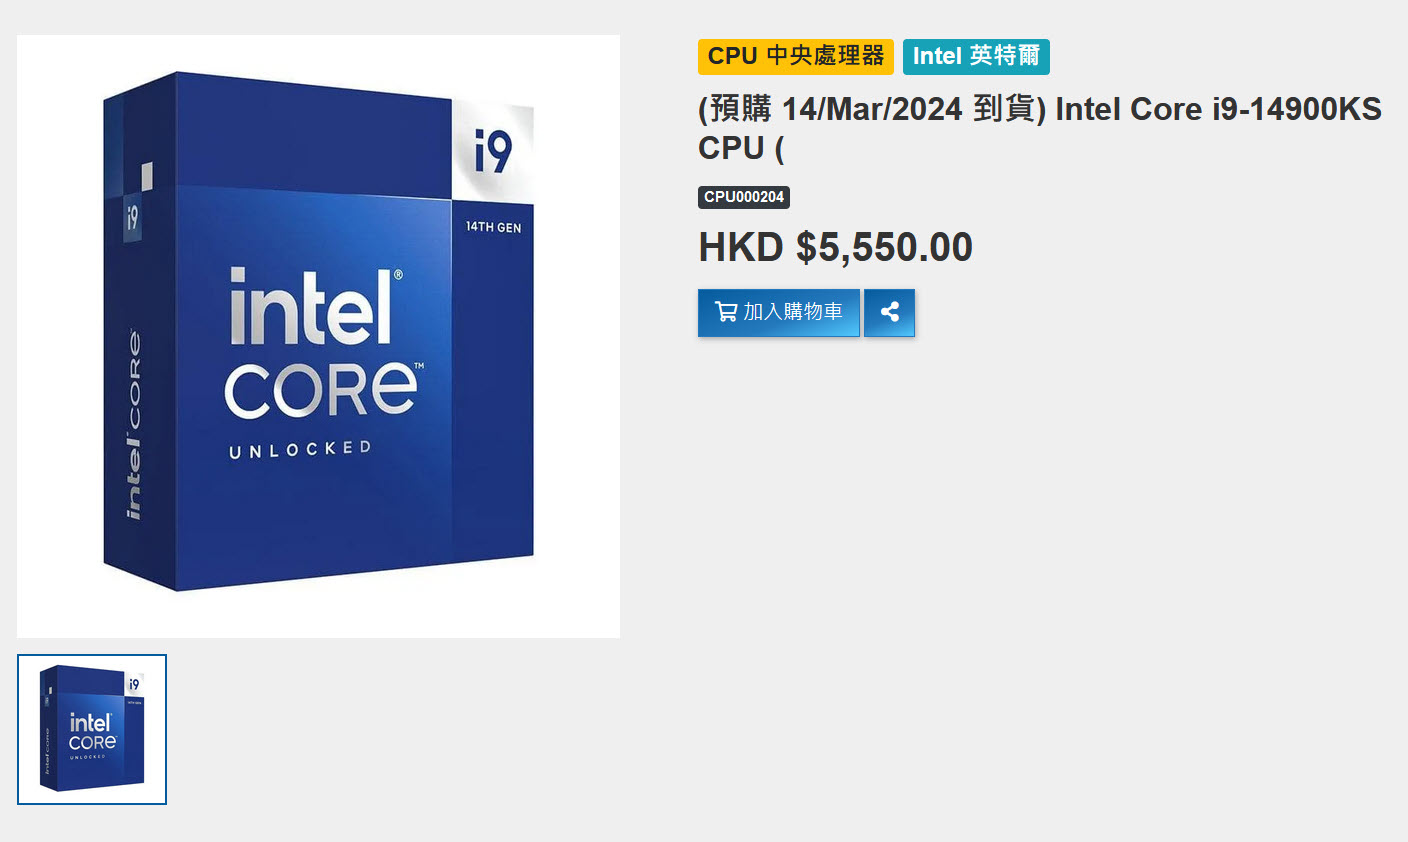 2024 03 09 23 22 20 หลุดราคาสั่งซื้อล่วงหน้าของซีพียู Intel Core i9 14900KS เพิ่มขึ้น 19 30% เมื่อเทียบกับ 14900K คาดเตรียมเปิดตัวในวันที่ 14 มีนาคมที่จะถึงนี้ค่อนข้างแน่นอน 